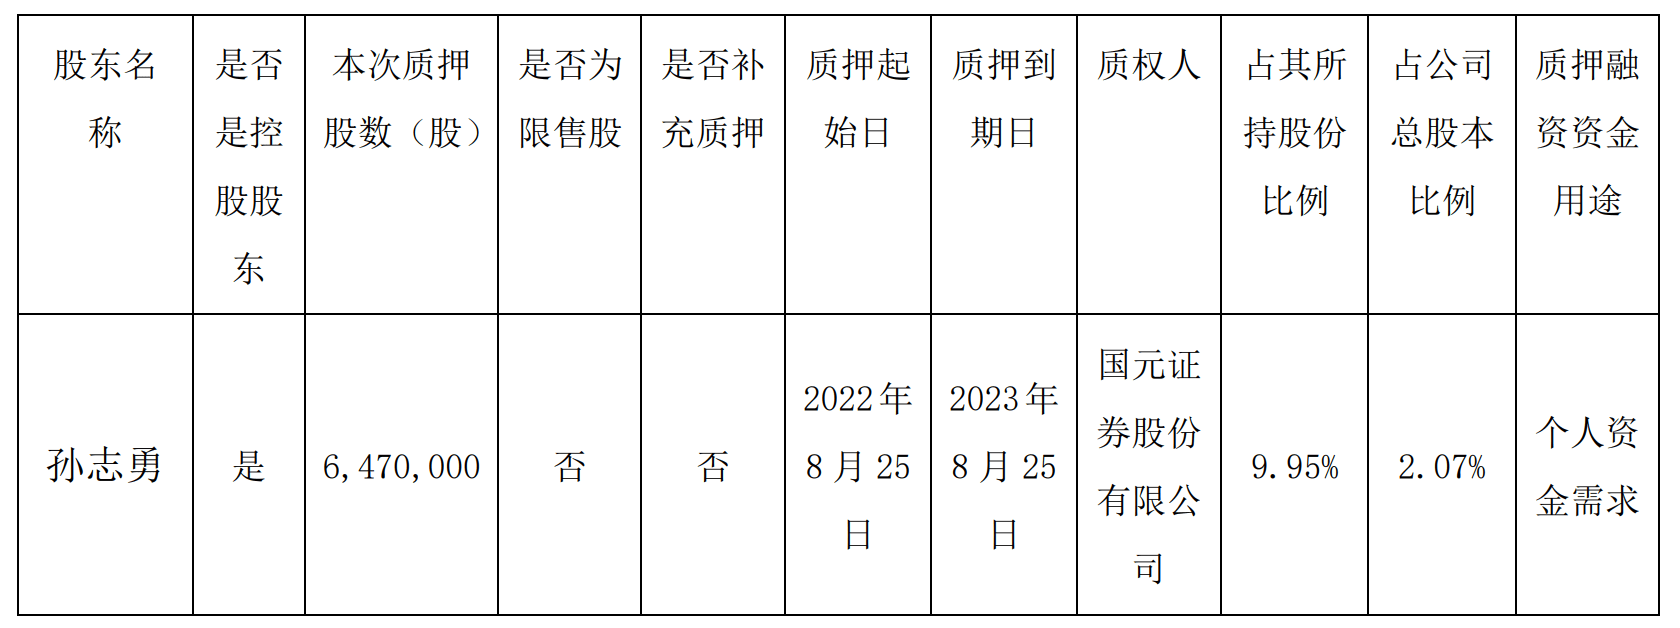 志邦家居：孙志勇质押647万股，占总股本2.07%